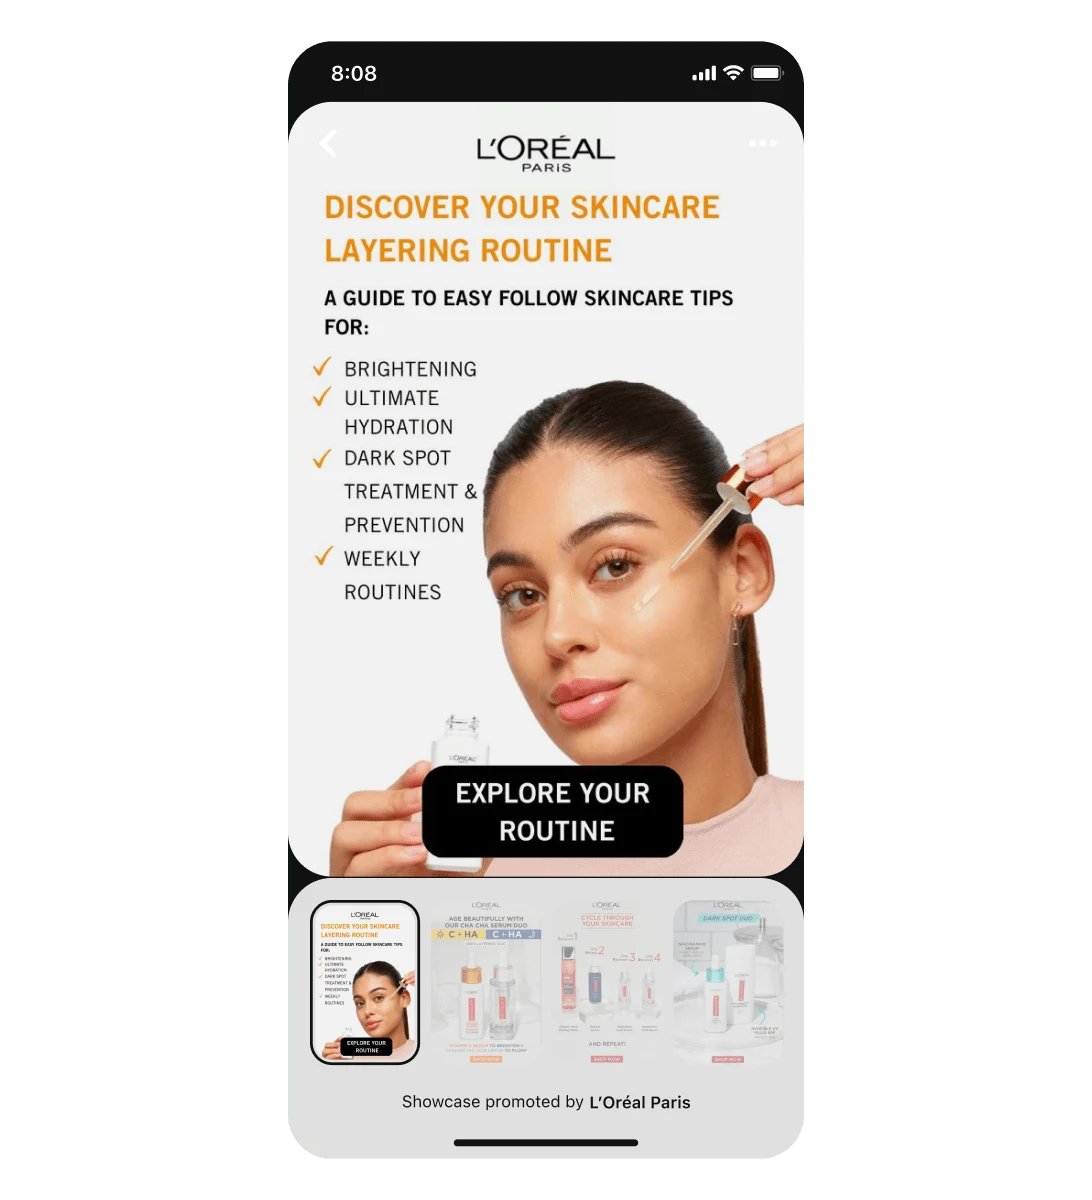 L’Oreal प्रदर्शन विज्ञापन का मोबाइल स्क्रीन व्यू, जो फ़ेस सीरम का उपयोग करती हुई एक लैटिना महिला को हाइलाइट करता है। तीन स्वाइप करने योग्य कार्ड इस शीर्षक पिन को फ़ॉलो करते हैं।